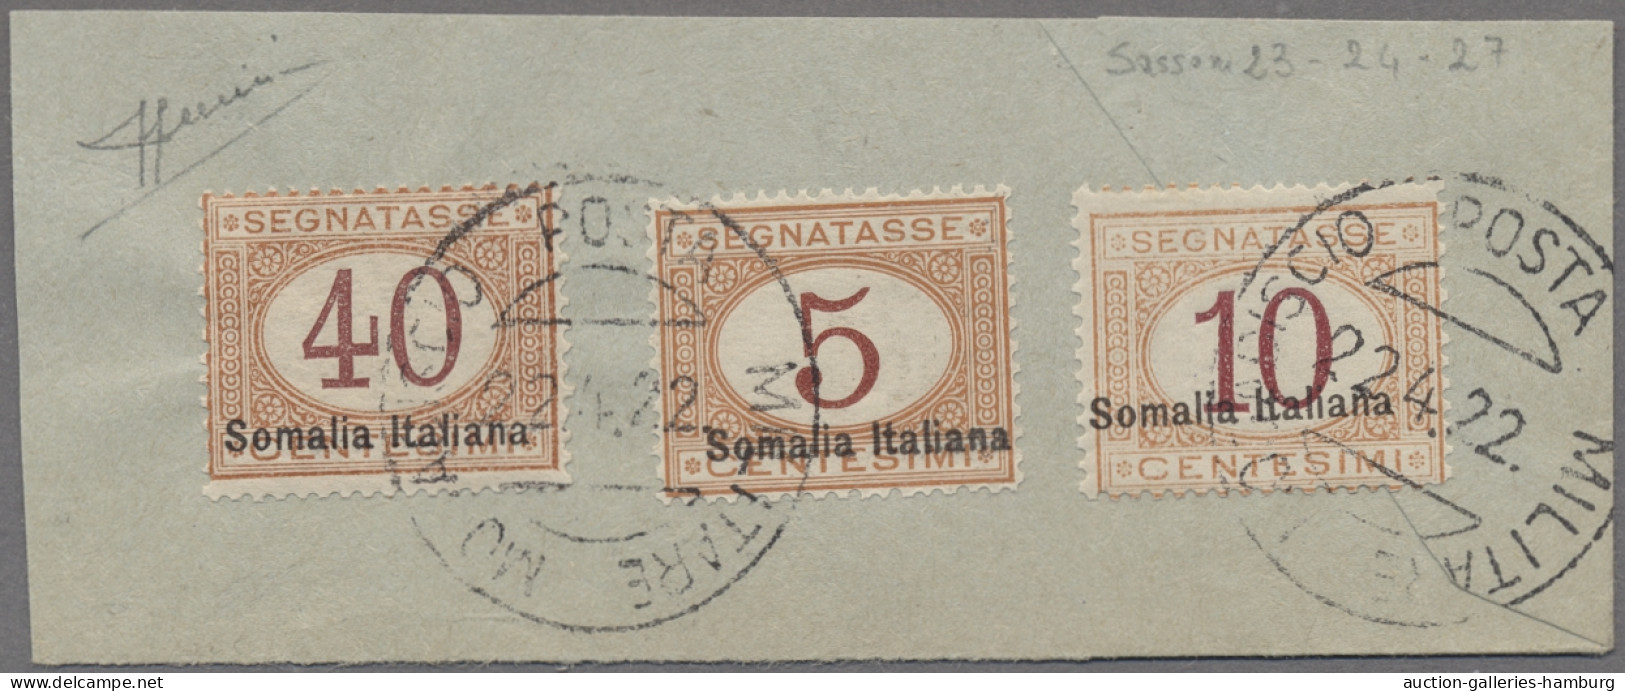 Italian Somalia - Postage Dues: 1920, Italienische Portomarken Mit Aufdruck "Som - Somalie